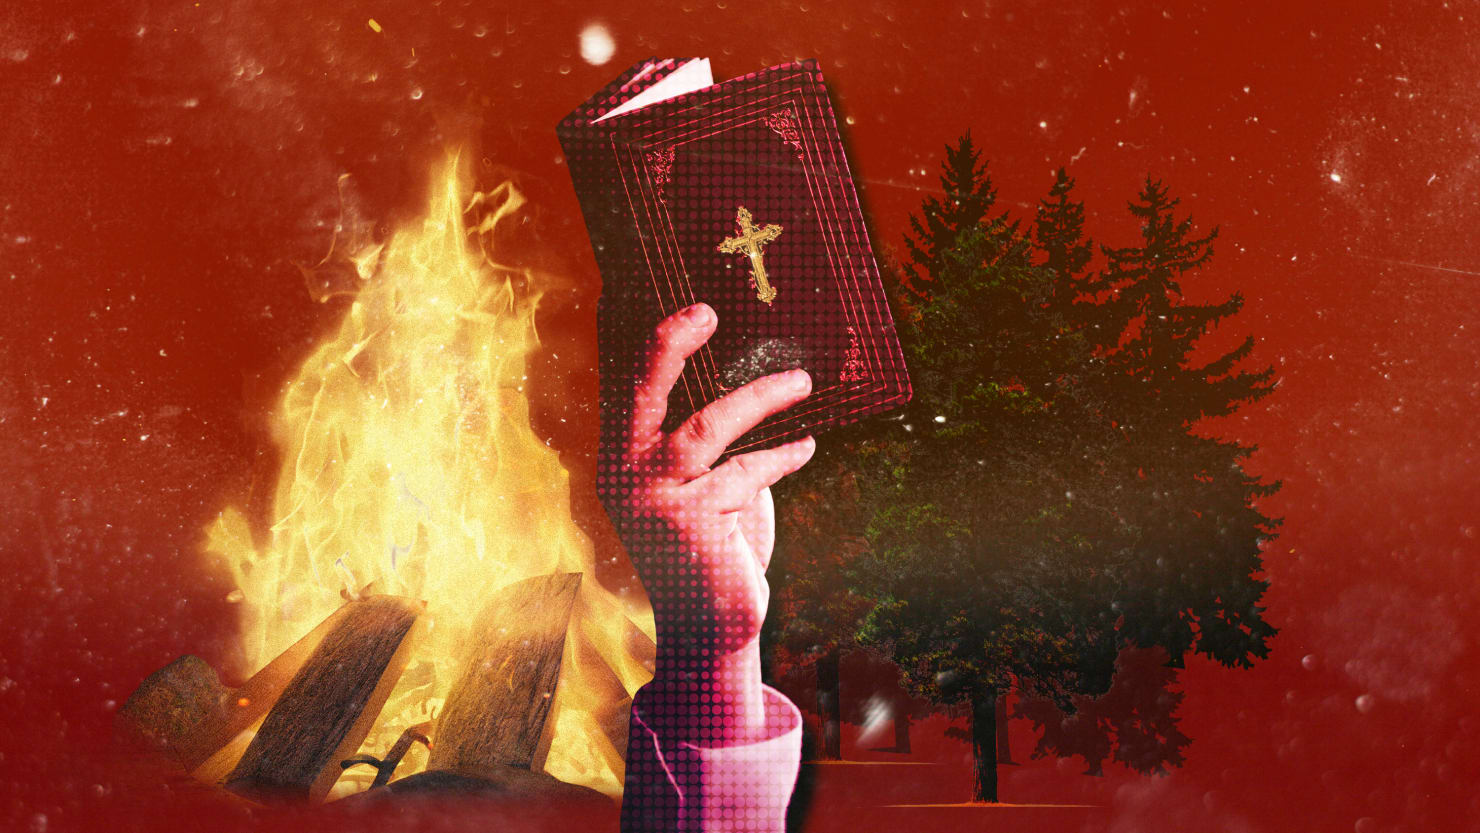 Campamento bíblico para adolescentes en Canadá bajo fuego por un supuesto exorcismo